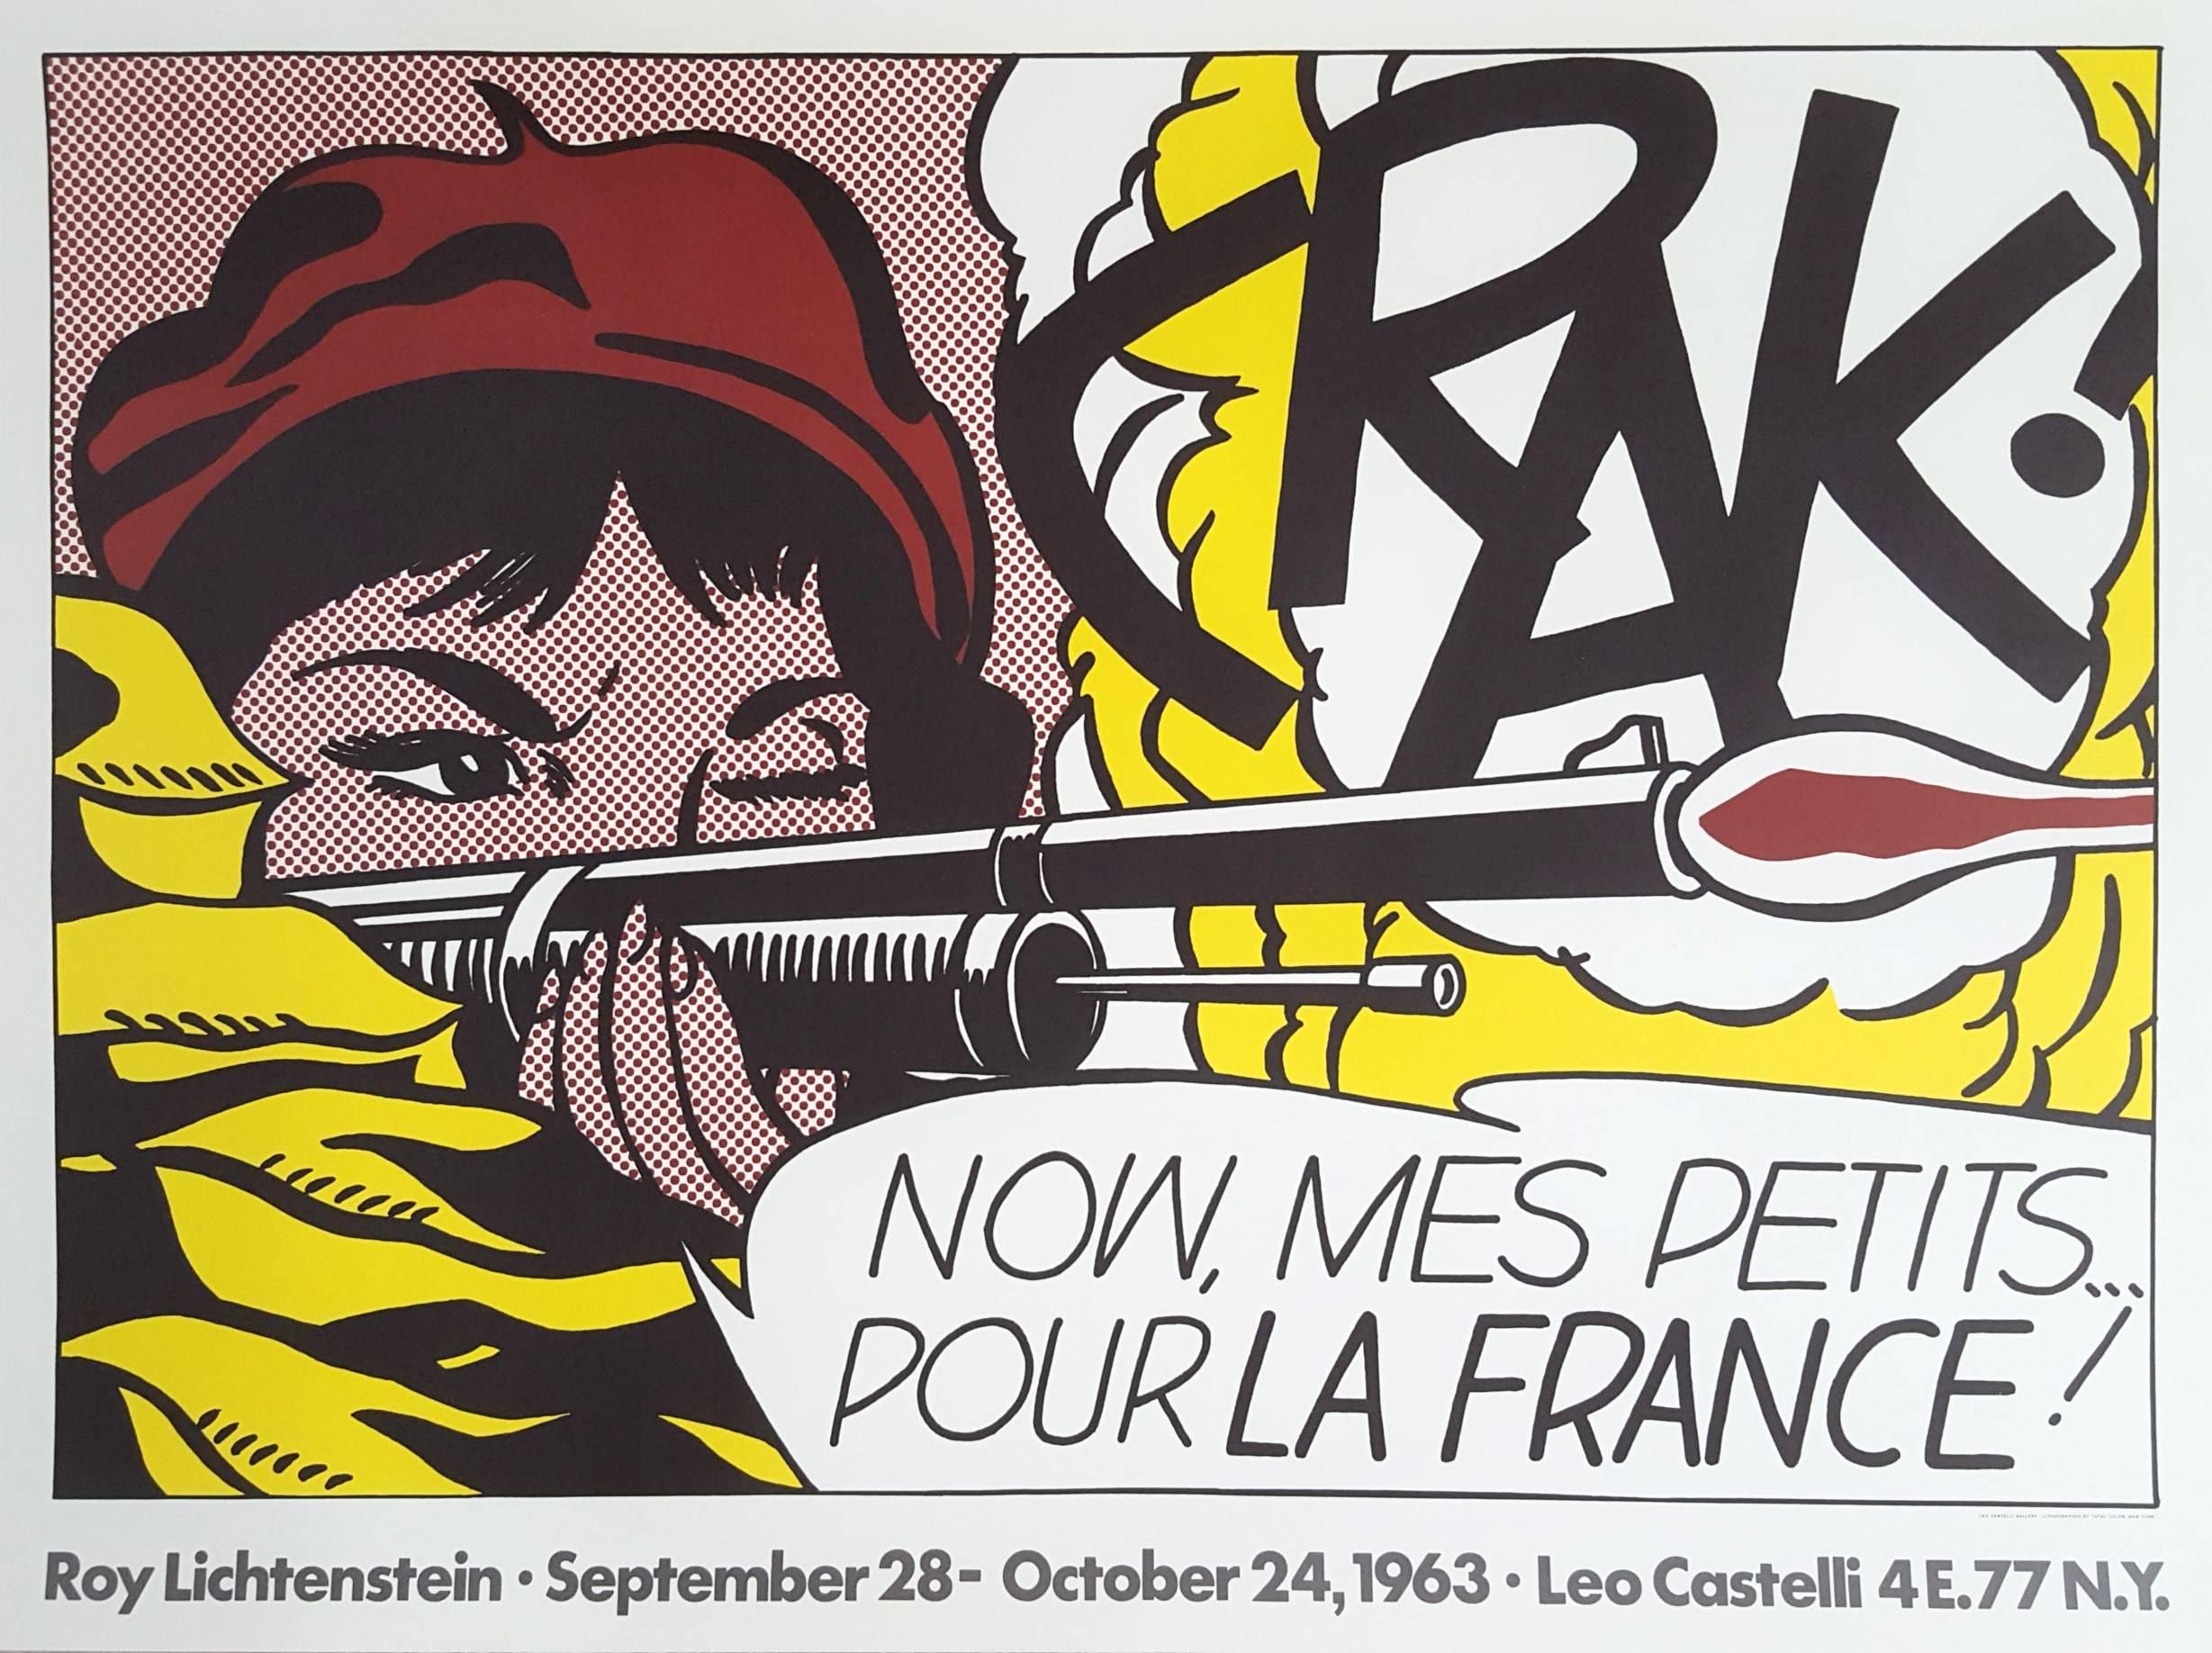 Roy Lichtenstein Figurative Print - CRAK!